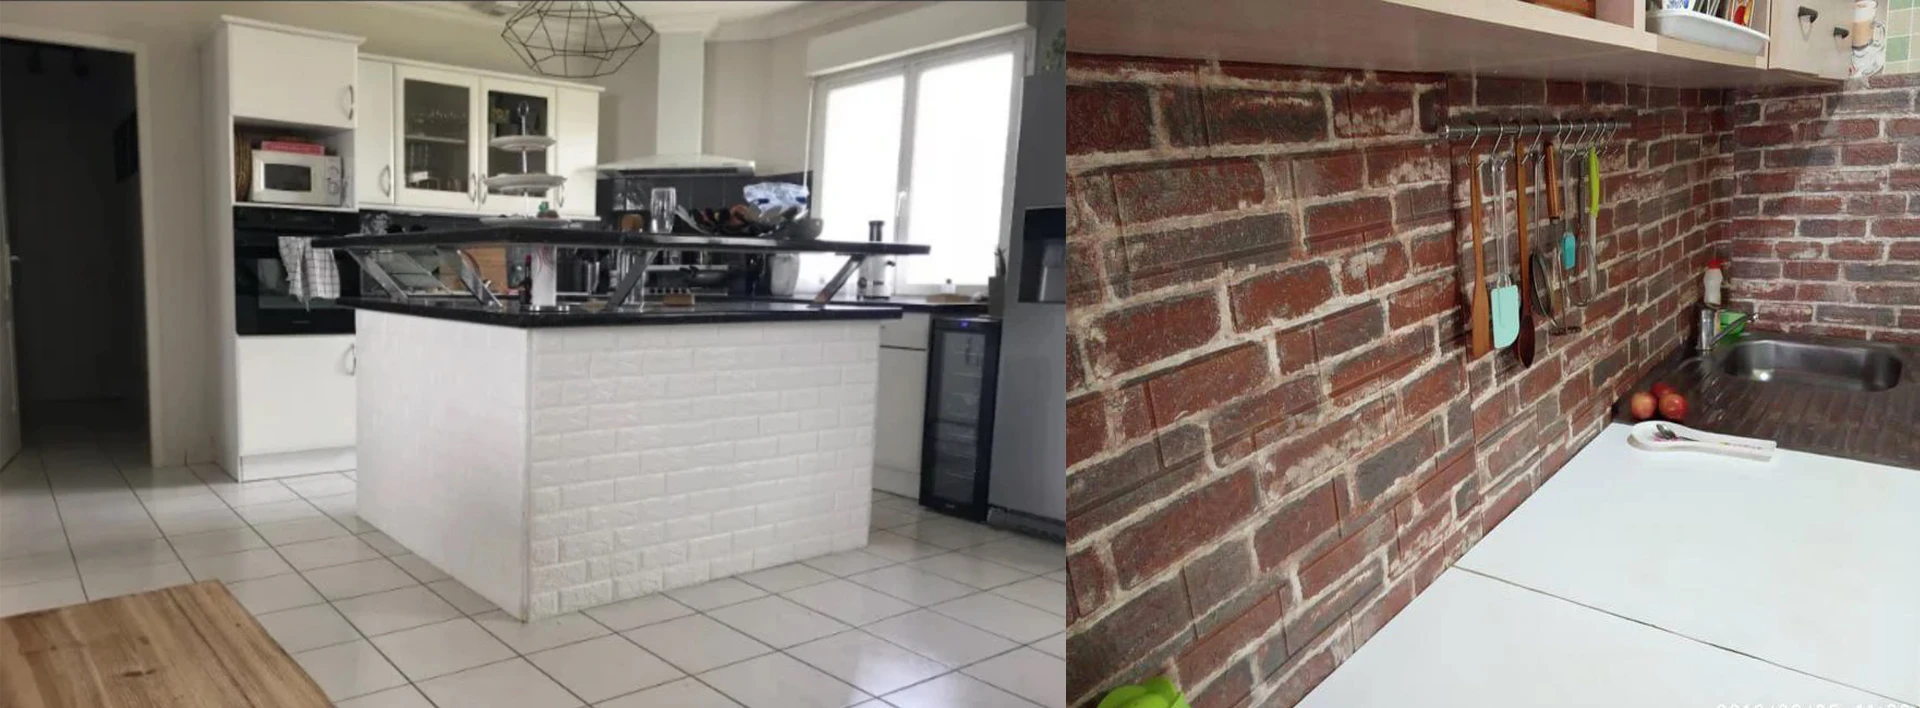 Стены на кухне из самоклеющихся панелей